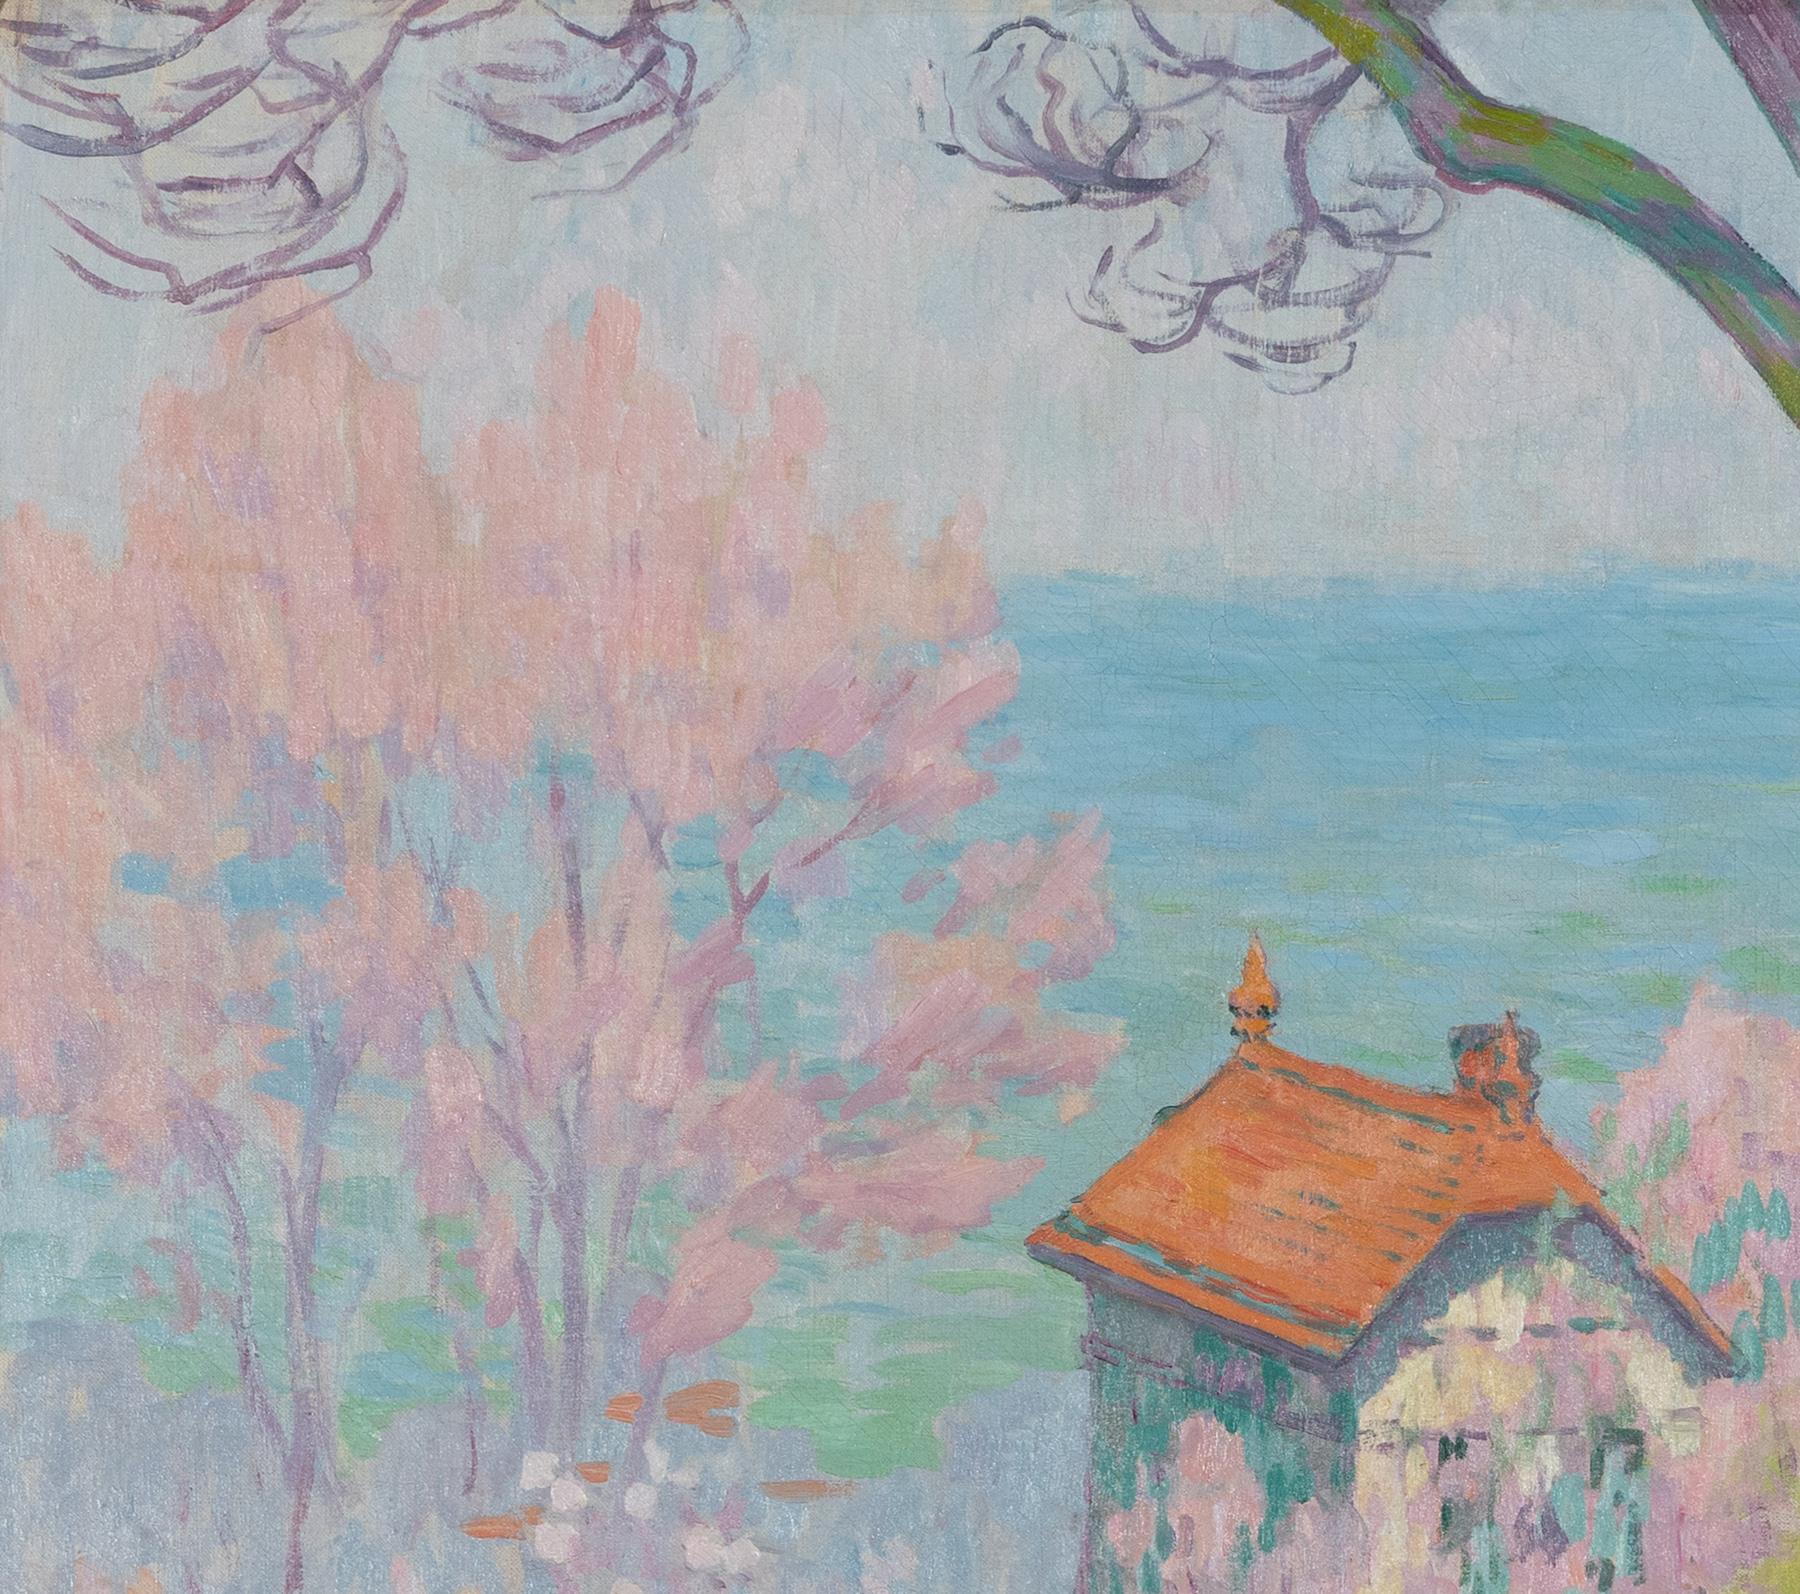 Vue de la Côte Normande von Claude-Émile Schuffenecker - Landschaftsmalerei (Impressionismus), Painting, von Claude Emile Schuffenecker